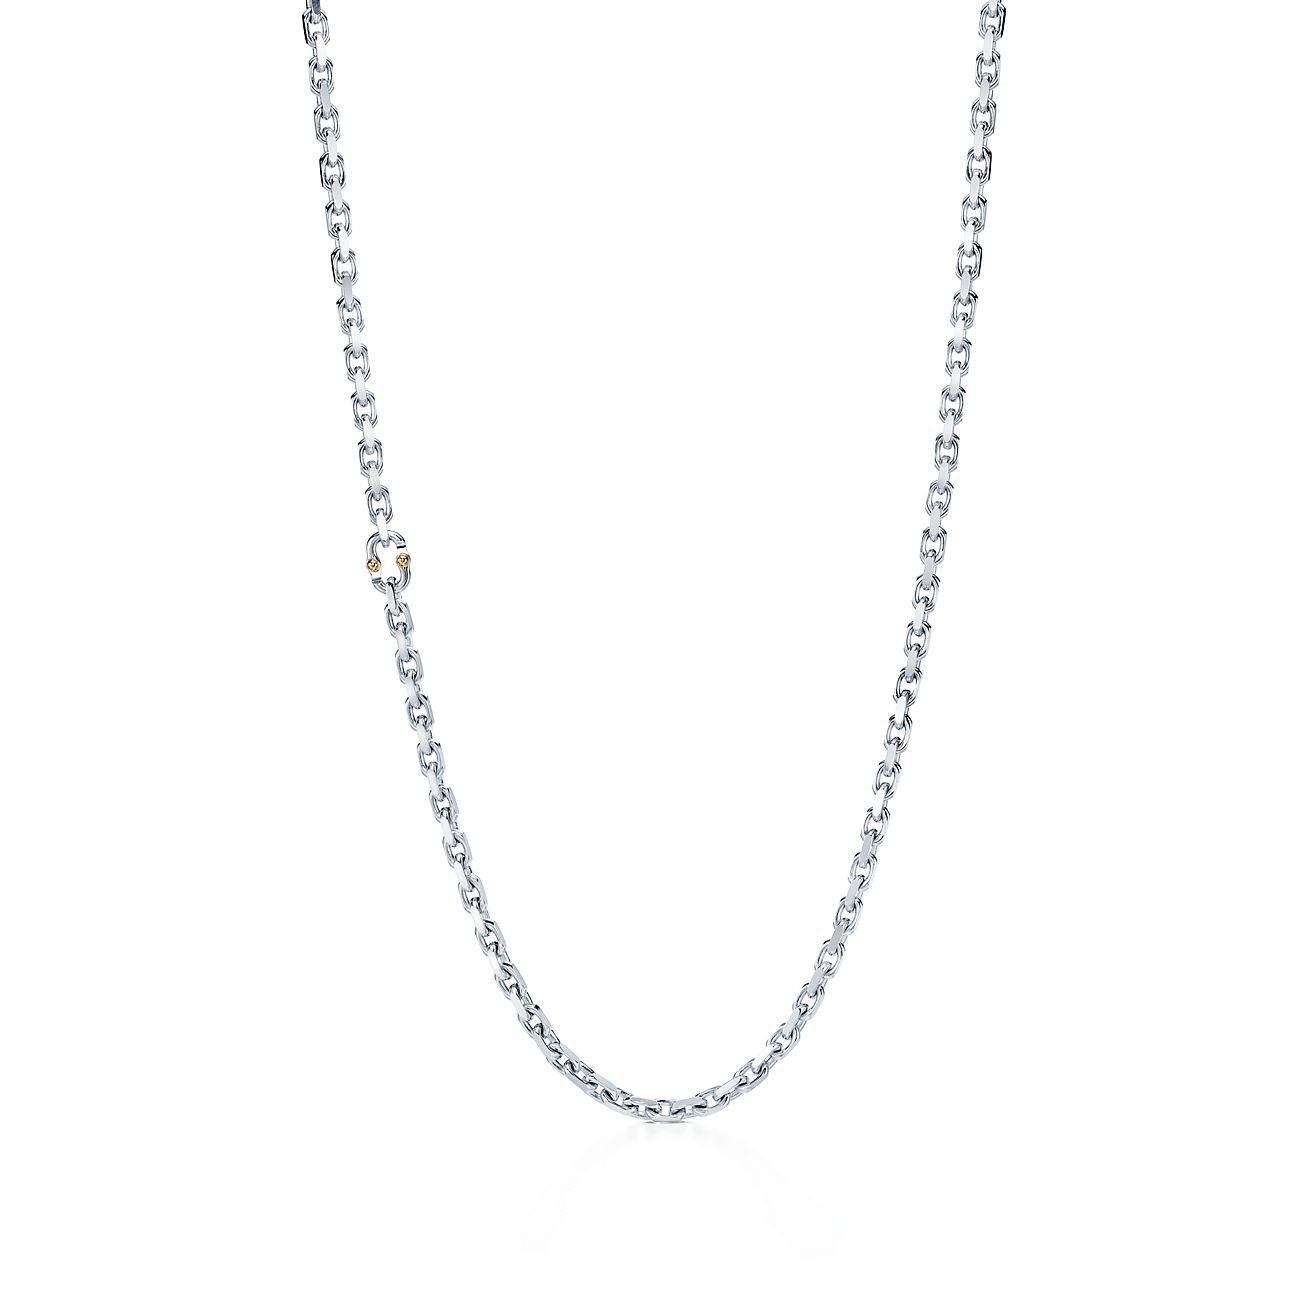 con cadena Tiffany 1837™ Makers en plata fina y de 18k, 61 cm. | Tiffany & Co.